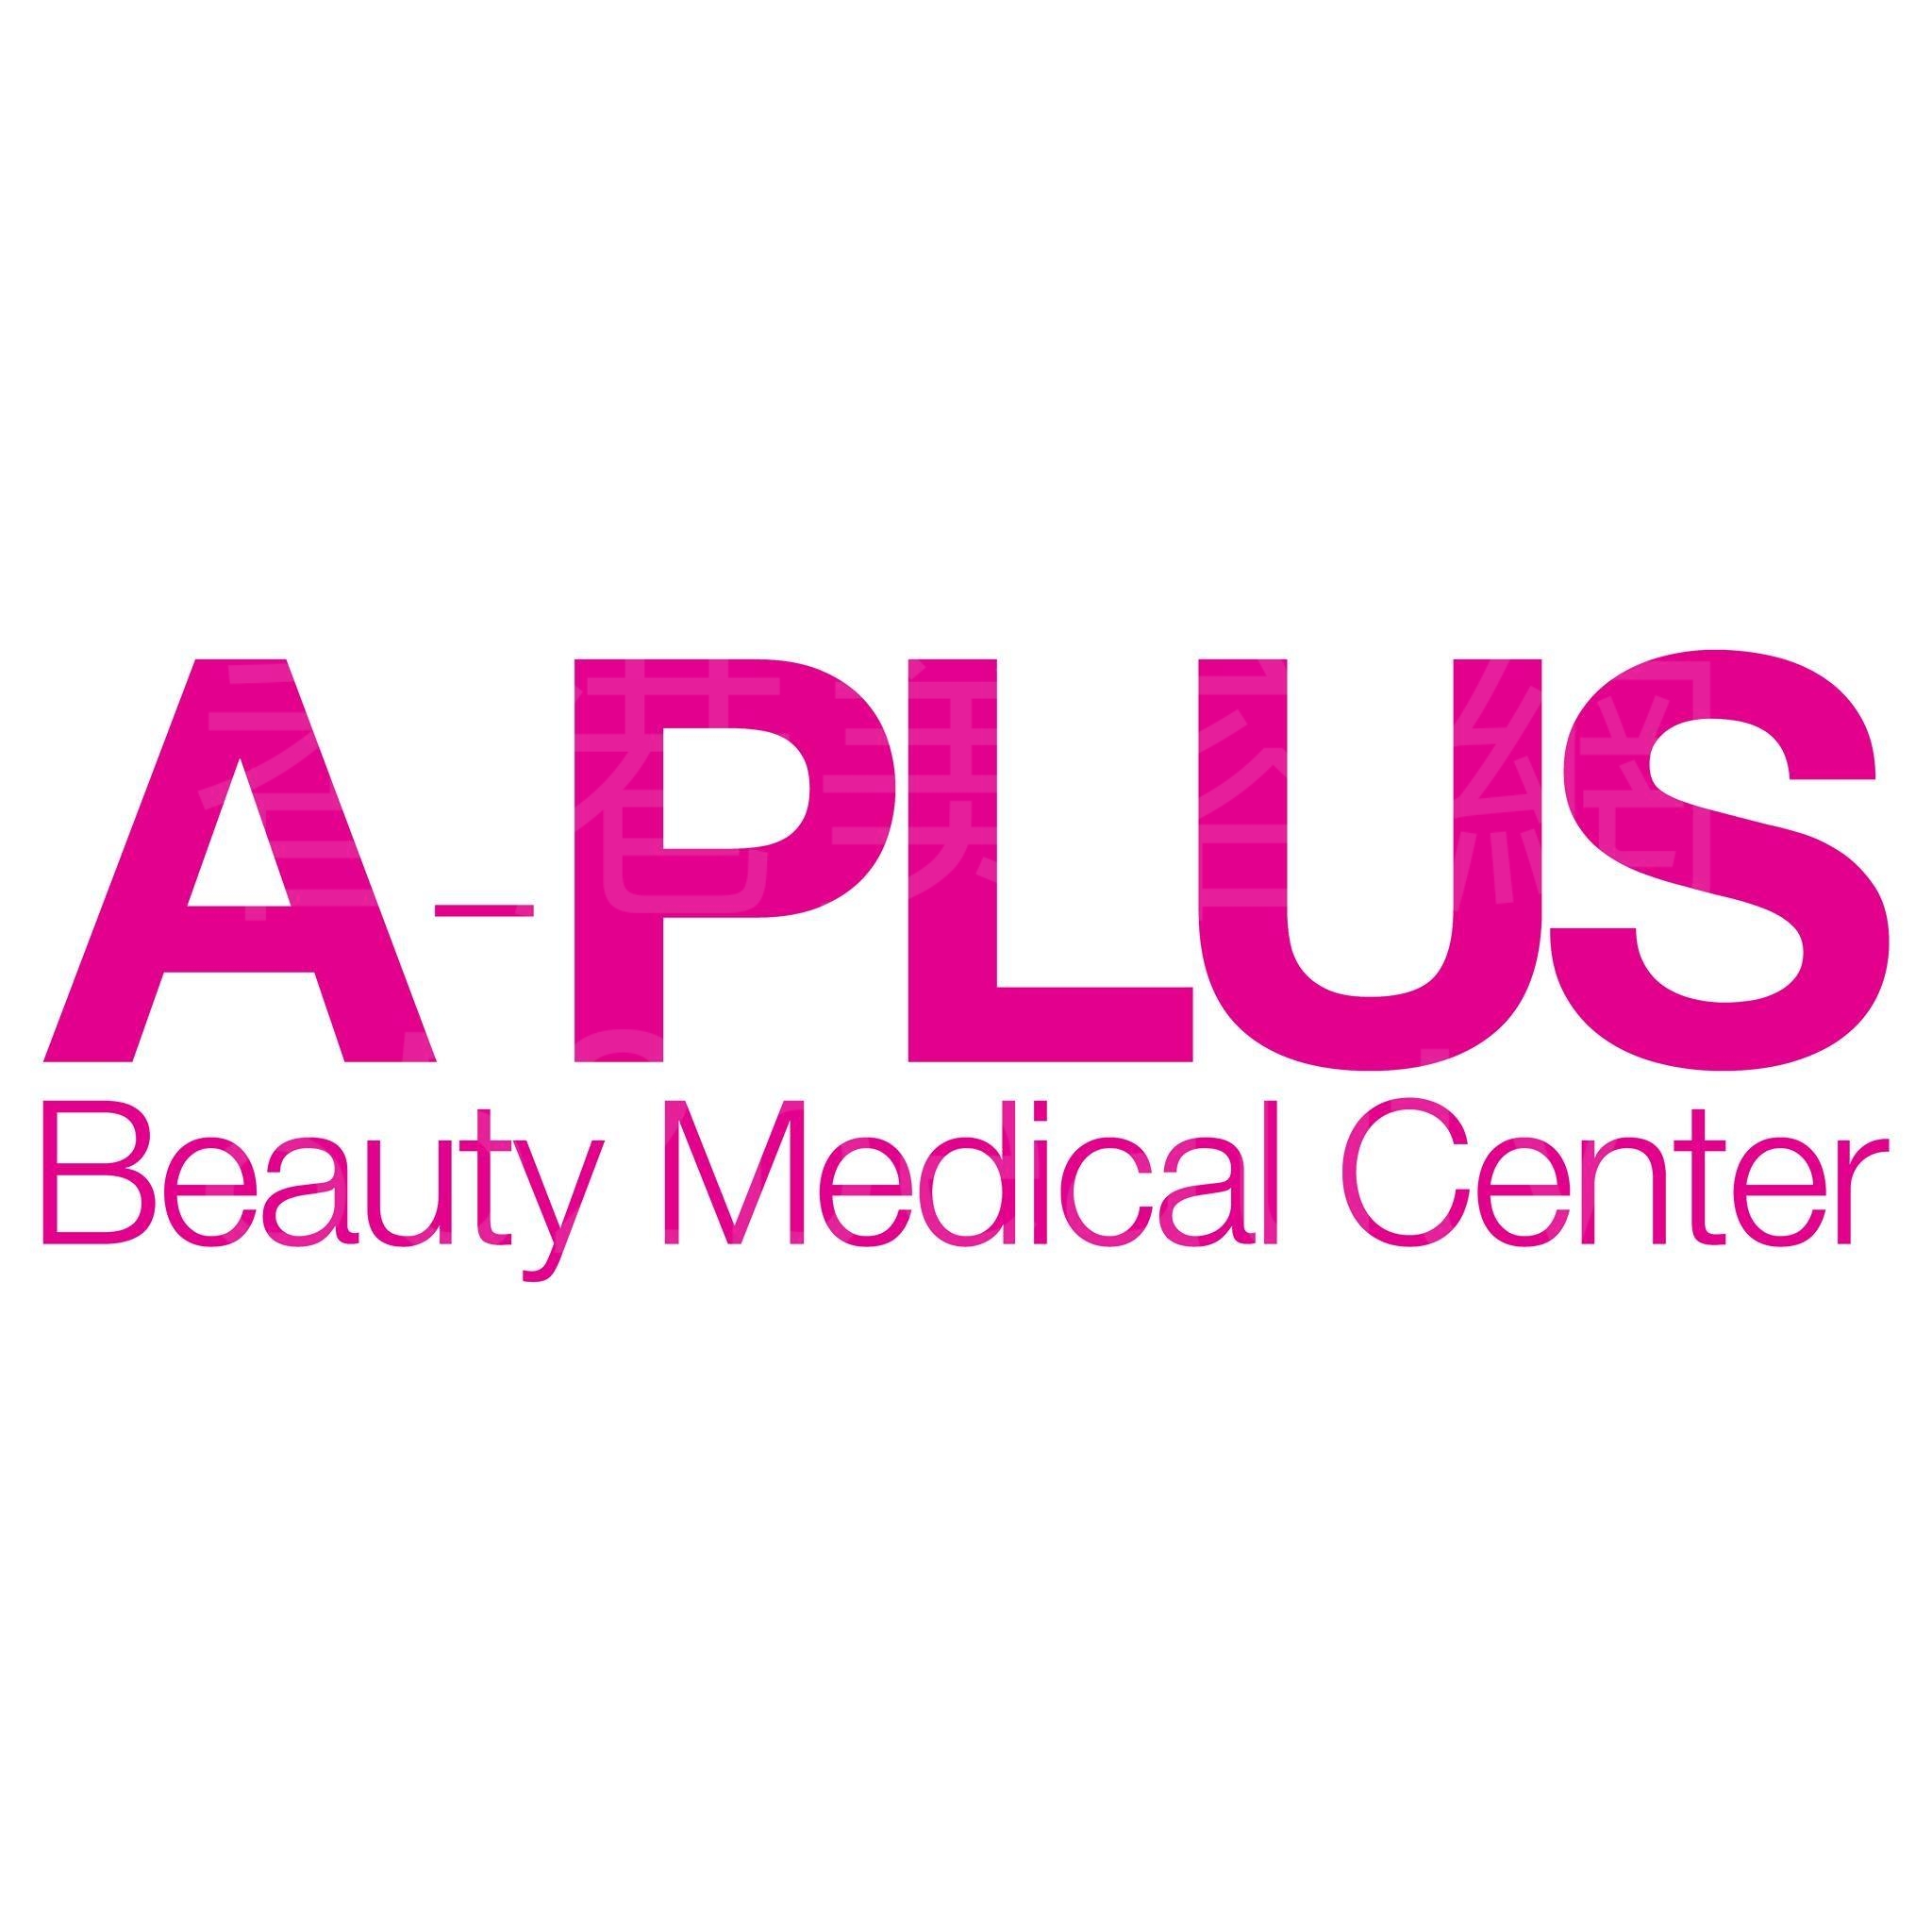 醫學美容: A-Plus Beauty Medical Center 醫學美容中心 (尖沙咀店)